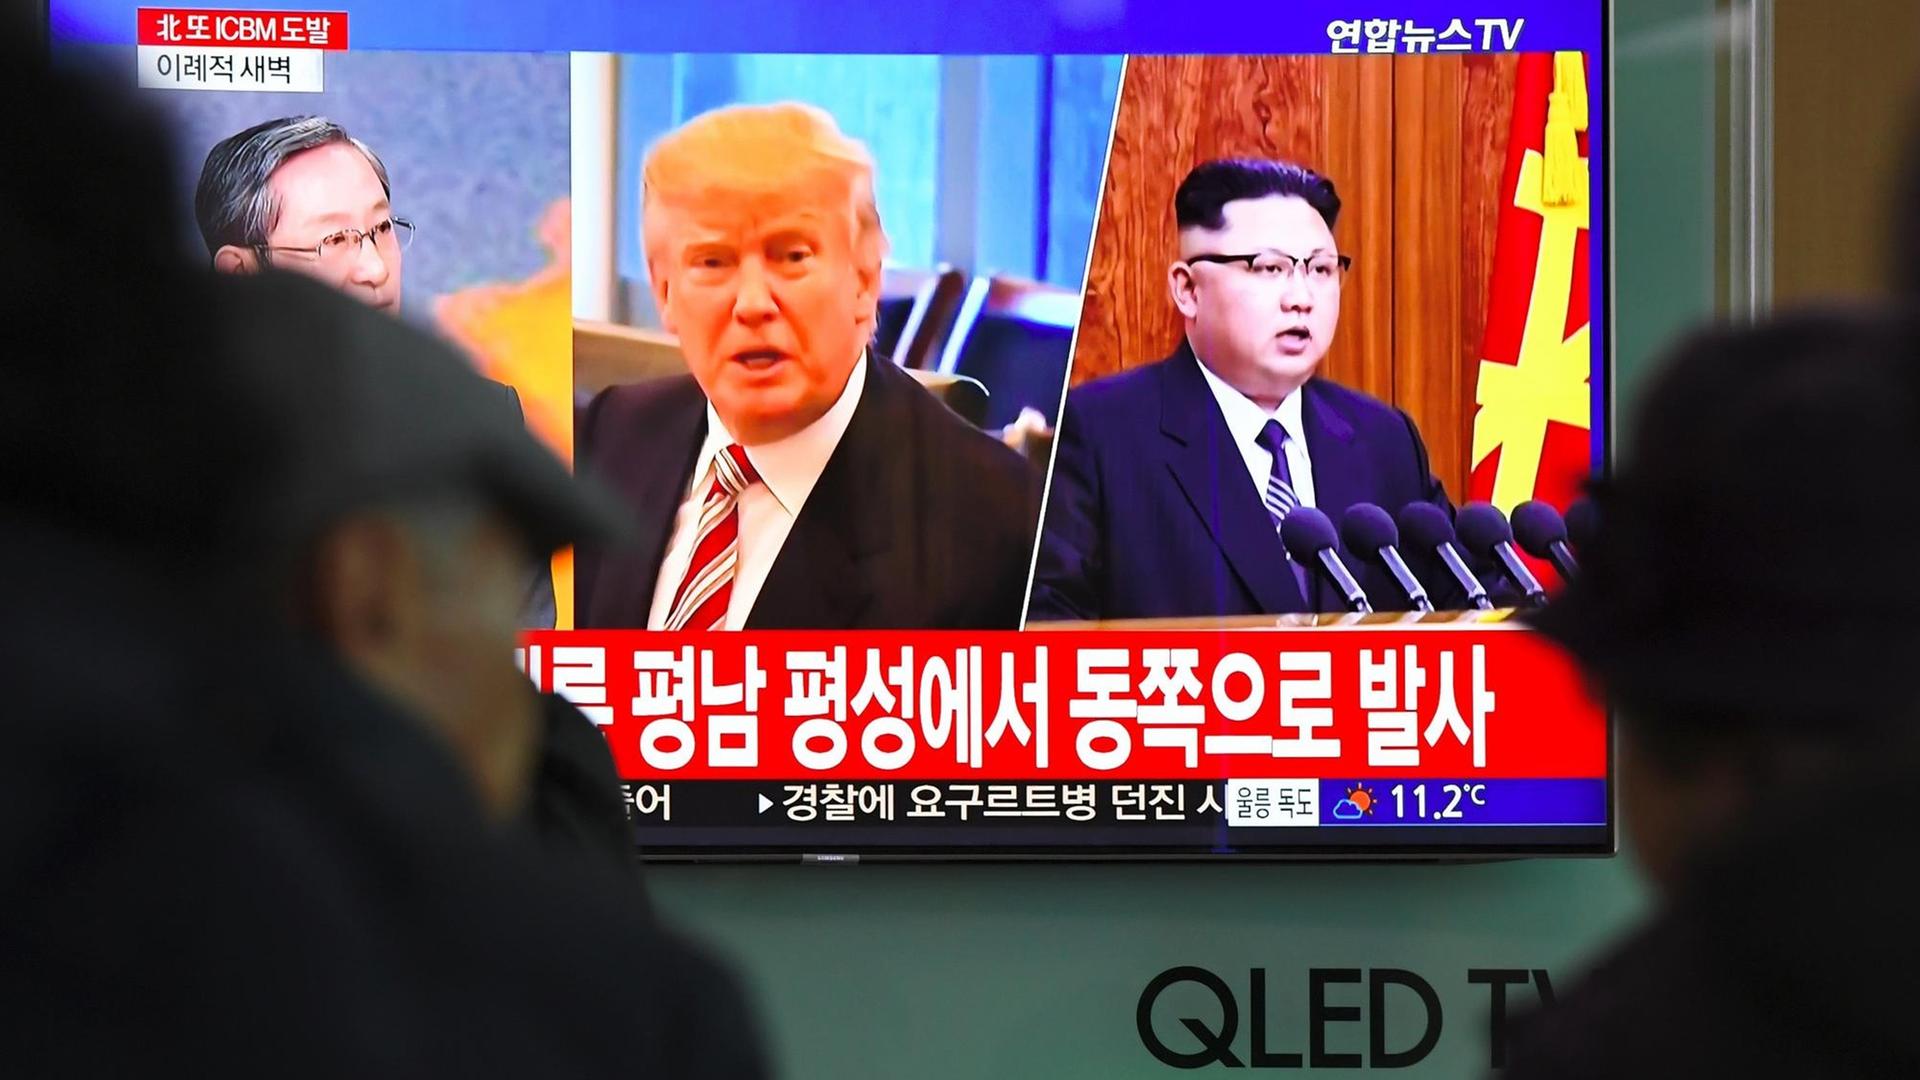 In einer Bahnstation in Seoul in Südkorea stehen Menschen vor einem TV-Bildschirm, auf dem US-Präsident Donald Trump und Nordkoreas Machthaber Kim Jong-Un zu sehen sind.